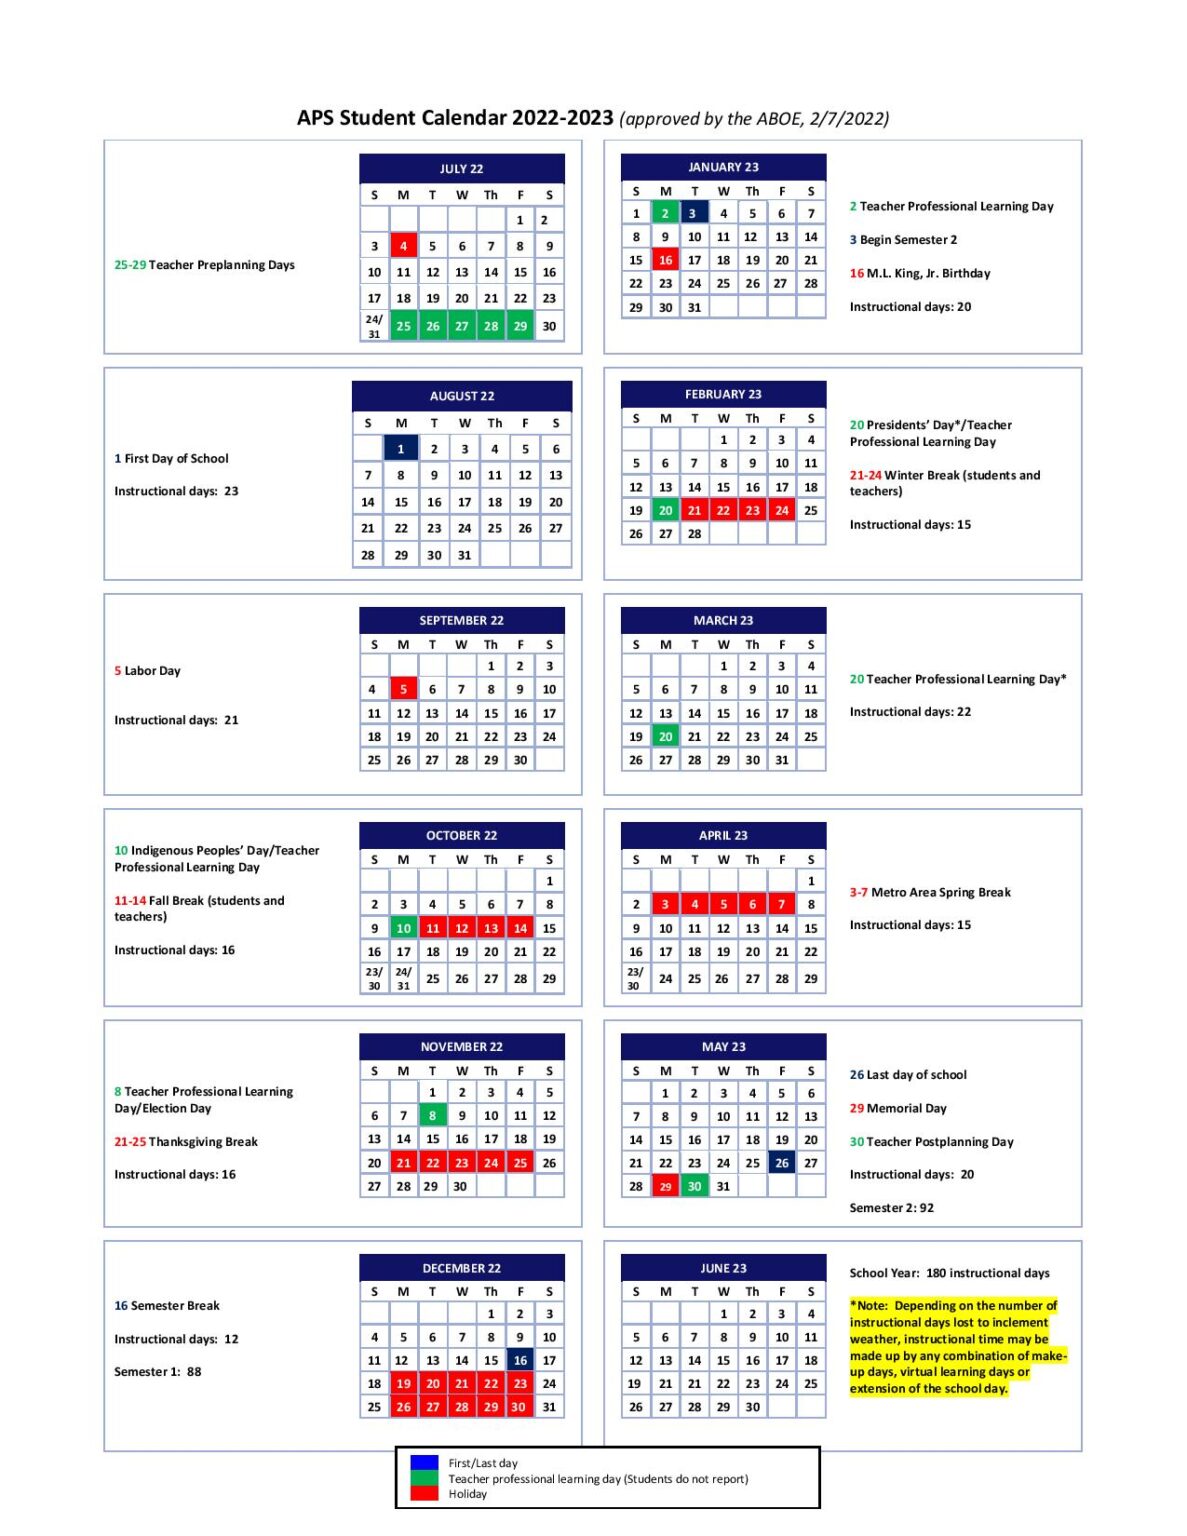 atlanta-public-schools-calendar-2022-2023-in-pdf